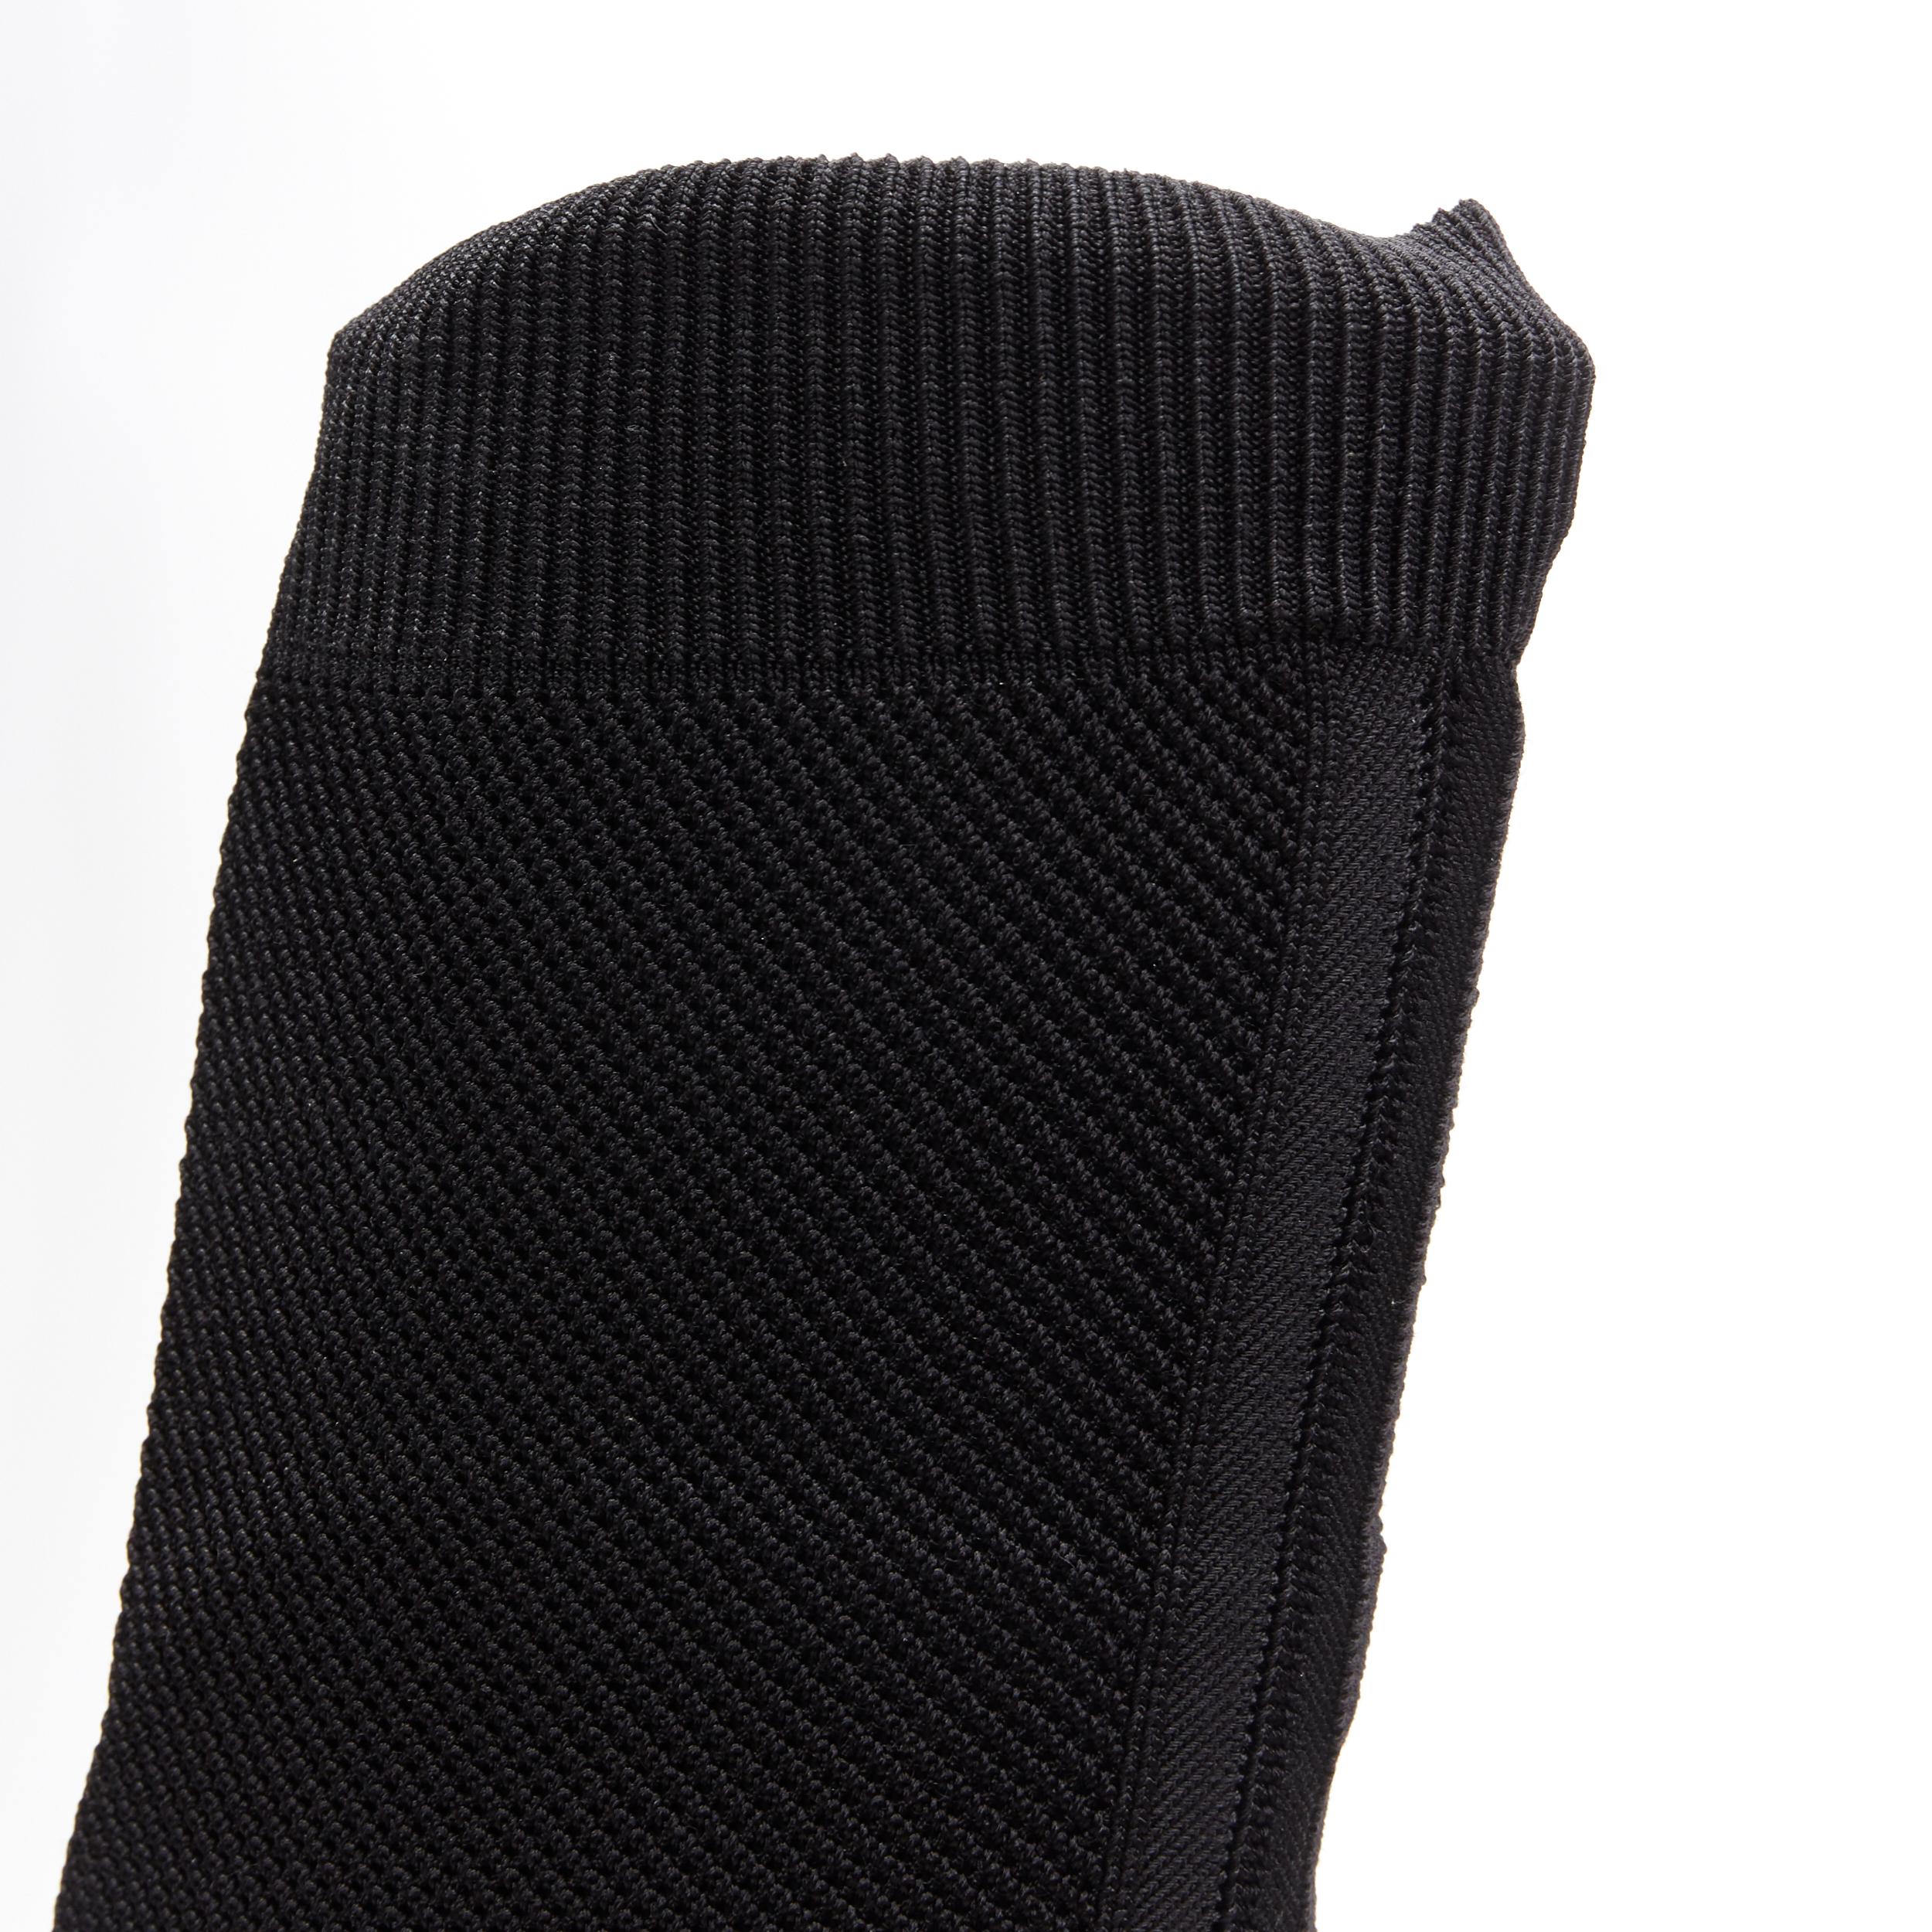 new CHRISTIAN LOUBOUTIN Souricette 100 black studded knee high sock boot EU37 2